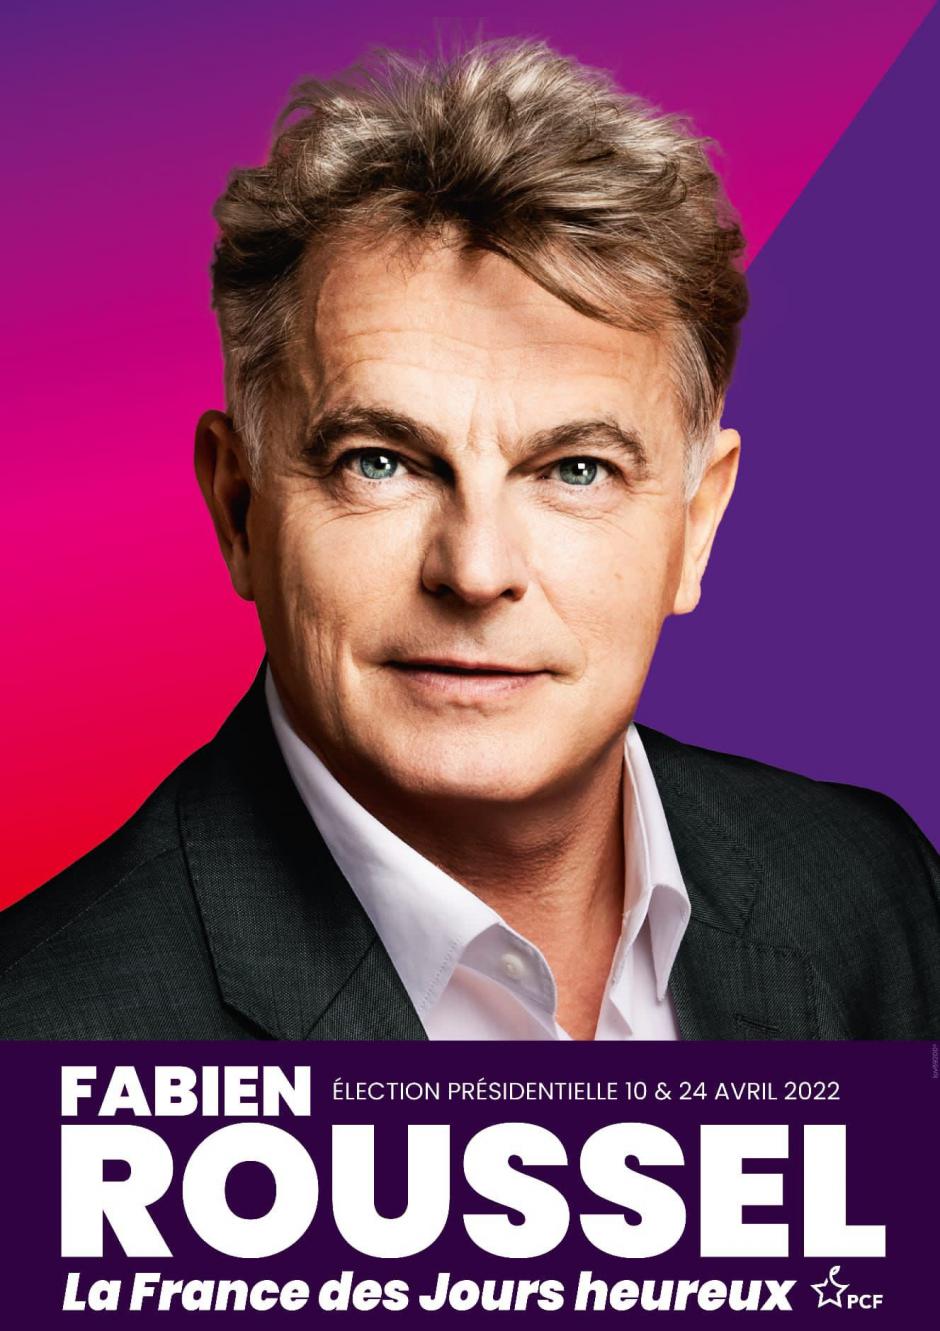 Voici le clip officiel de campagne de Fabien Roussel !